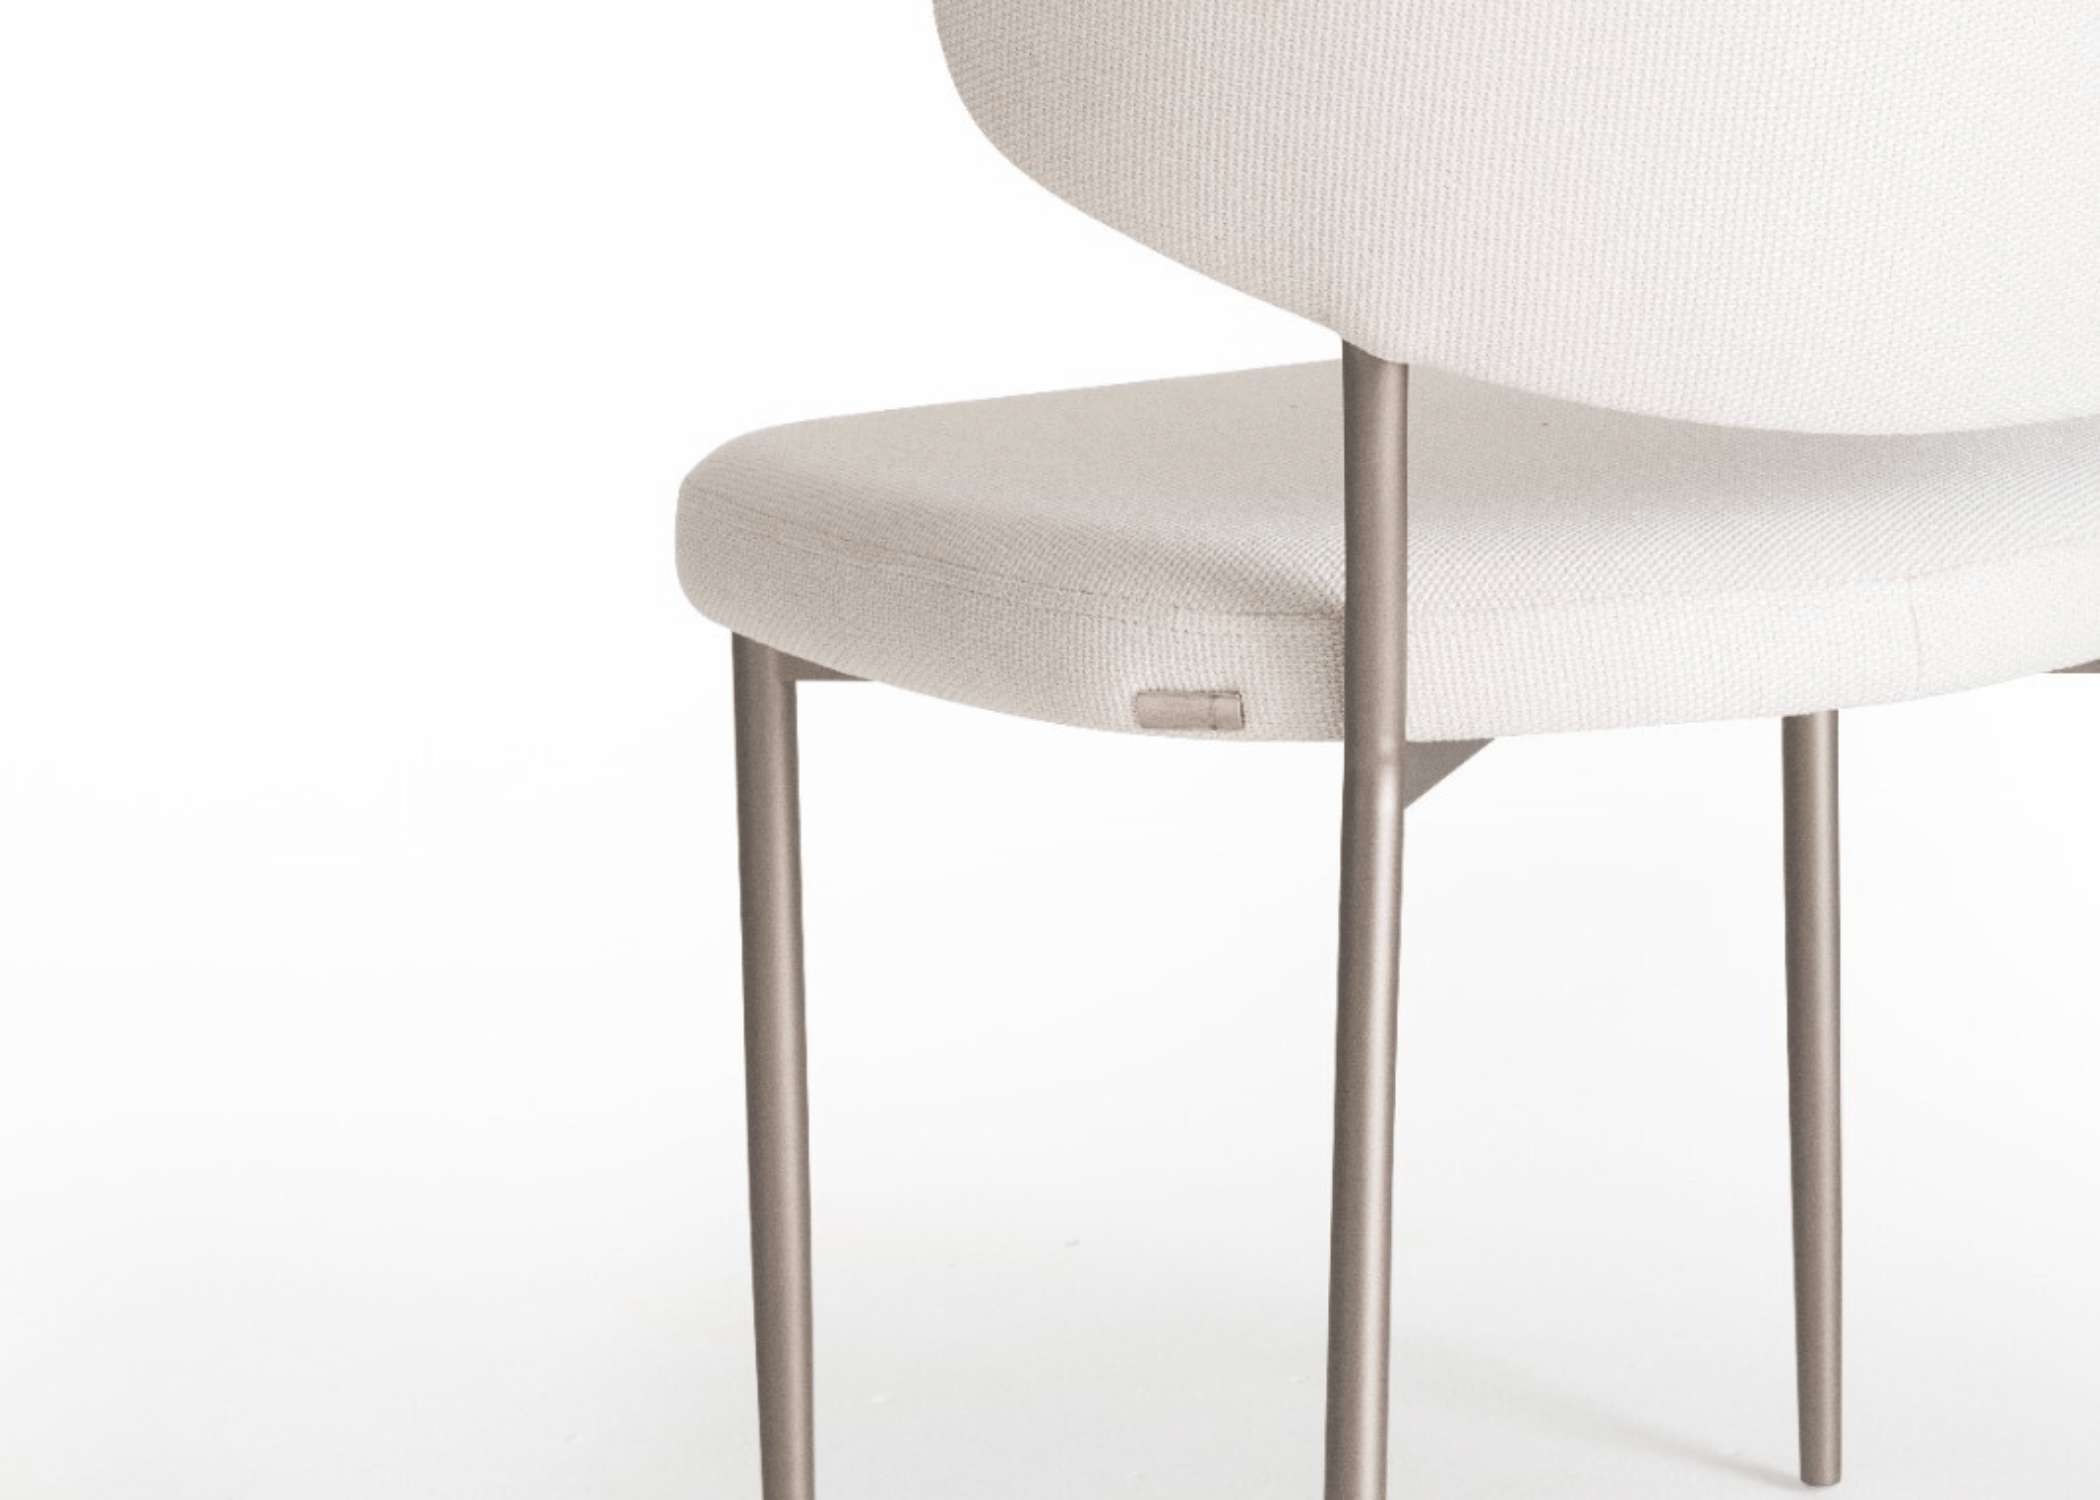 Cadeira Aline como peça central em um escritório, combinando beleza e funcionalidade.